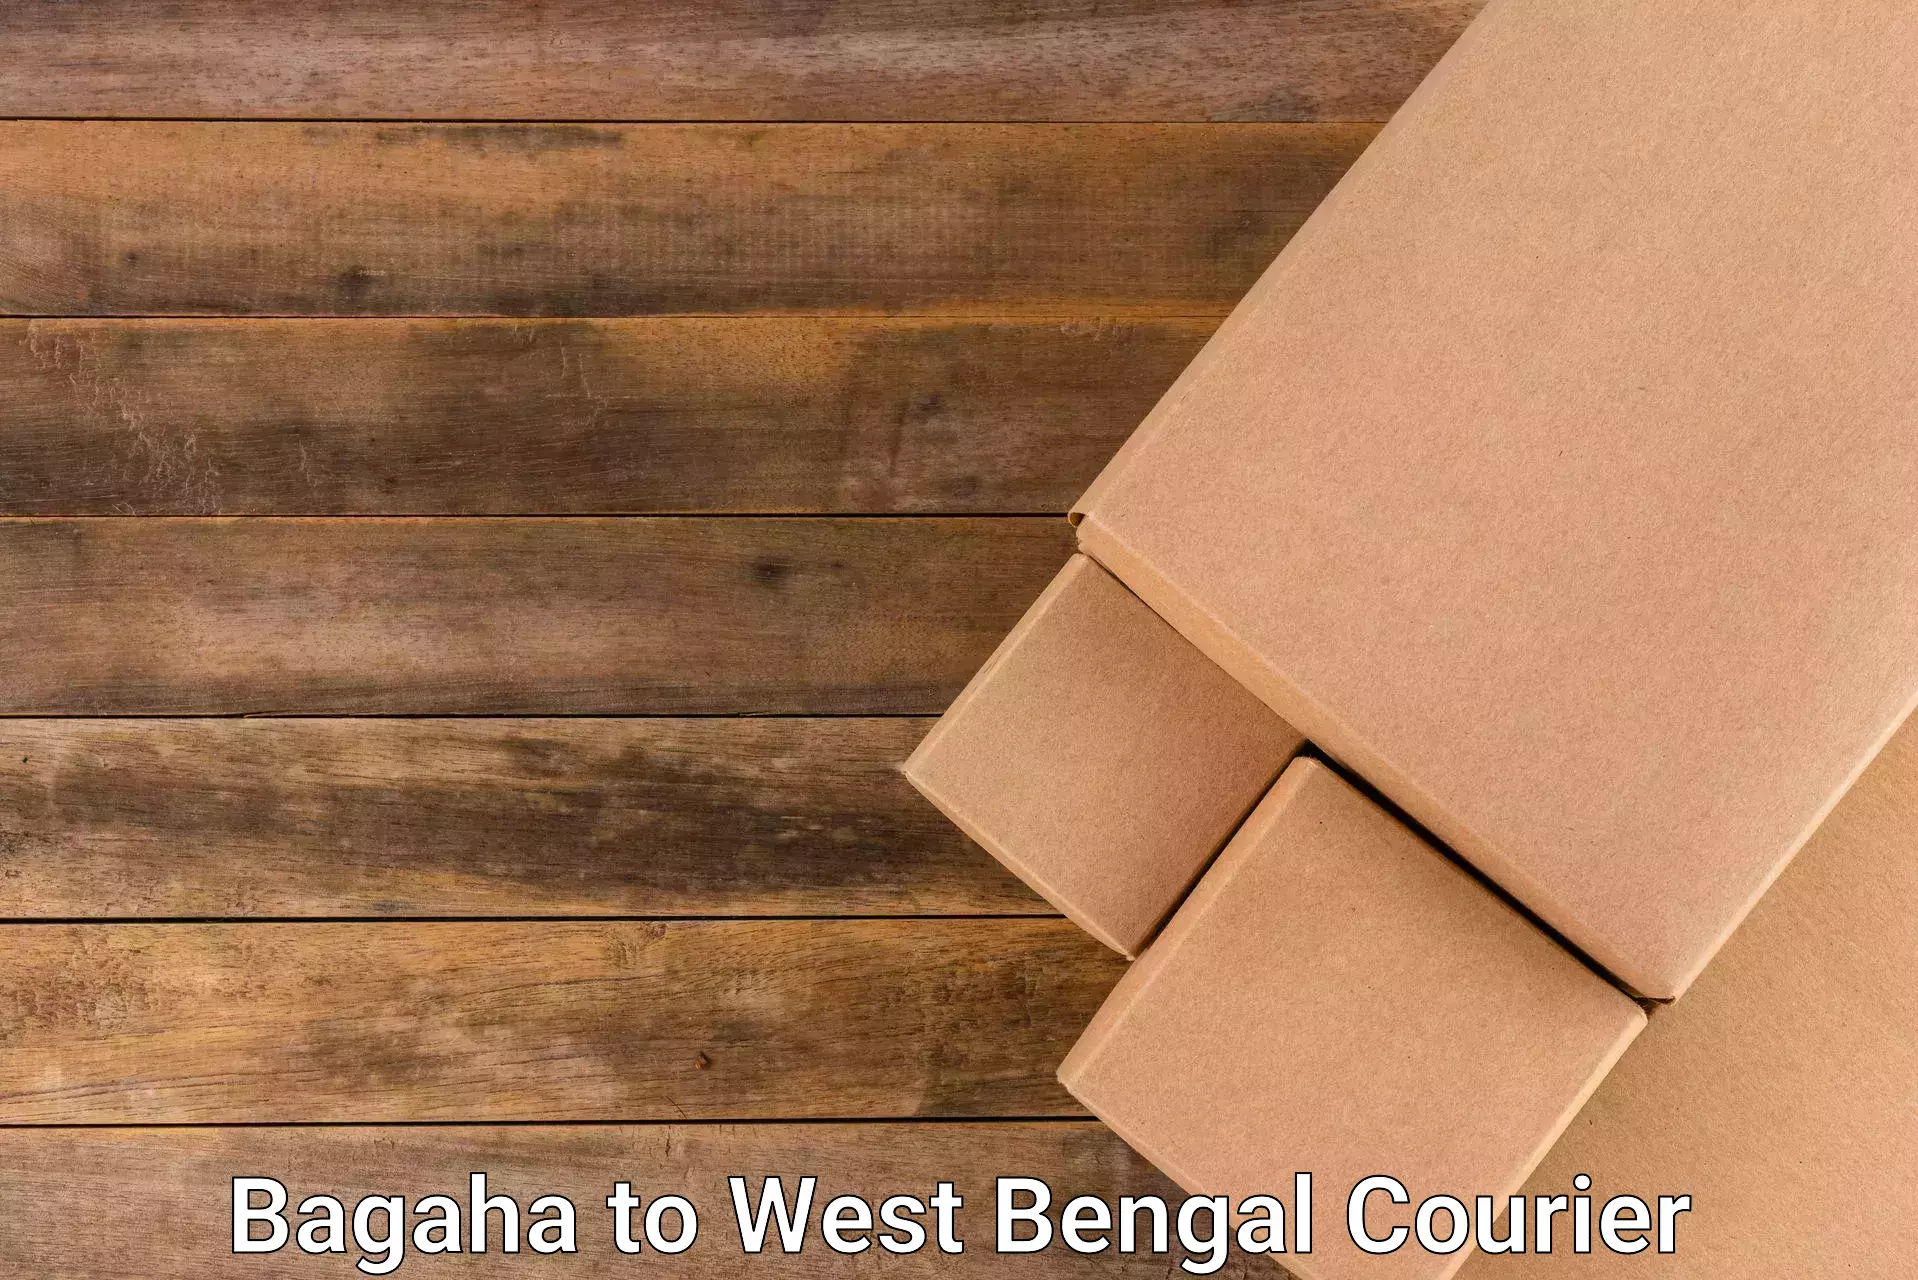 Efficient cargo handling Bagaha to Baghmundi